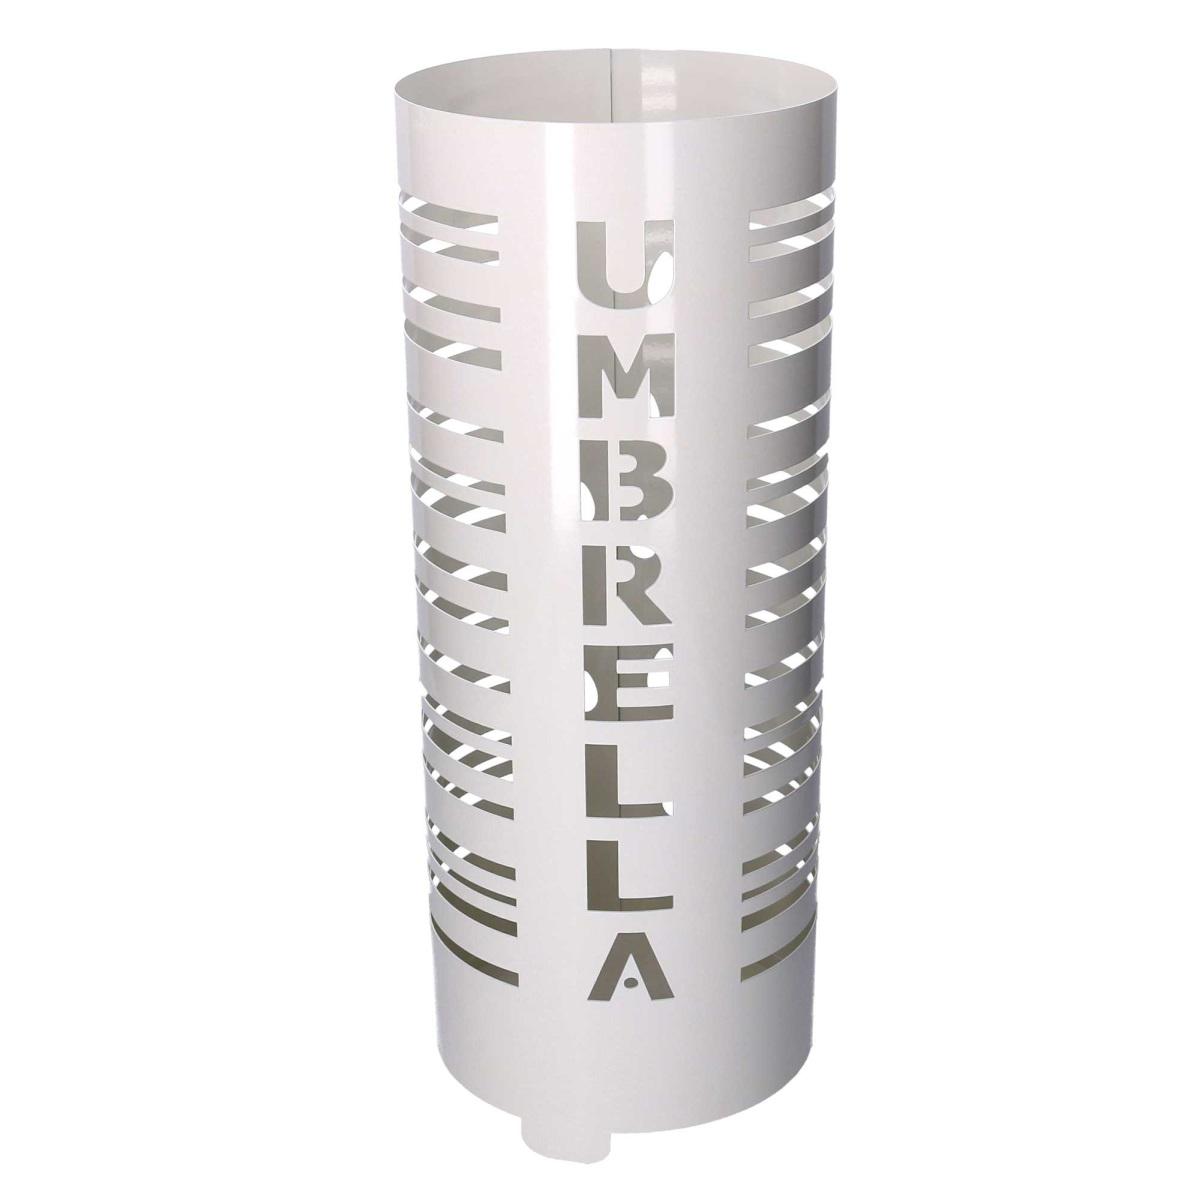 Portaombrelli Metallo Scritta Umbrella Bianco Tondo Cm.Ø19H49